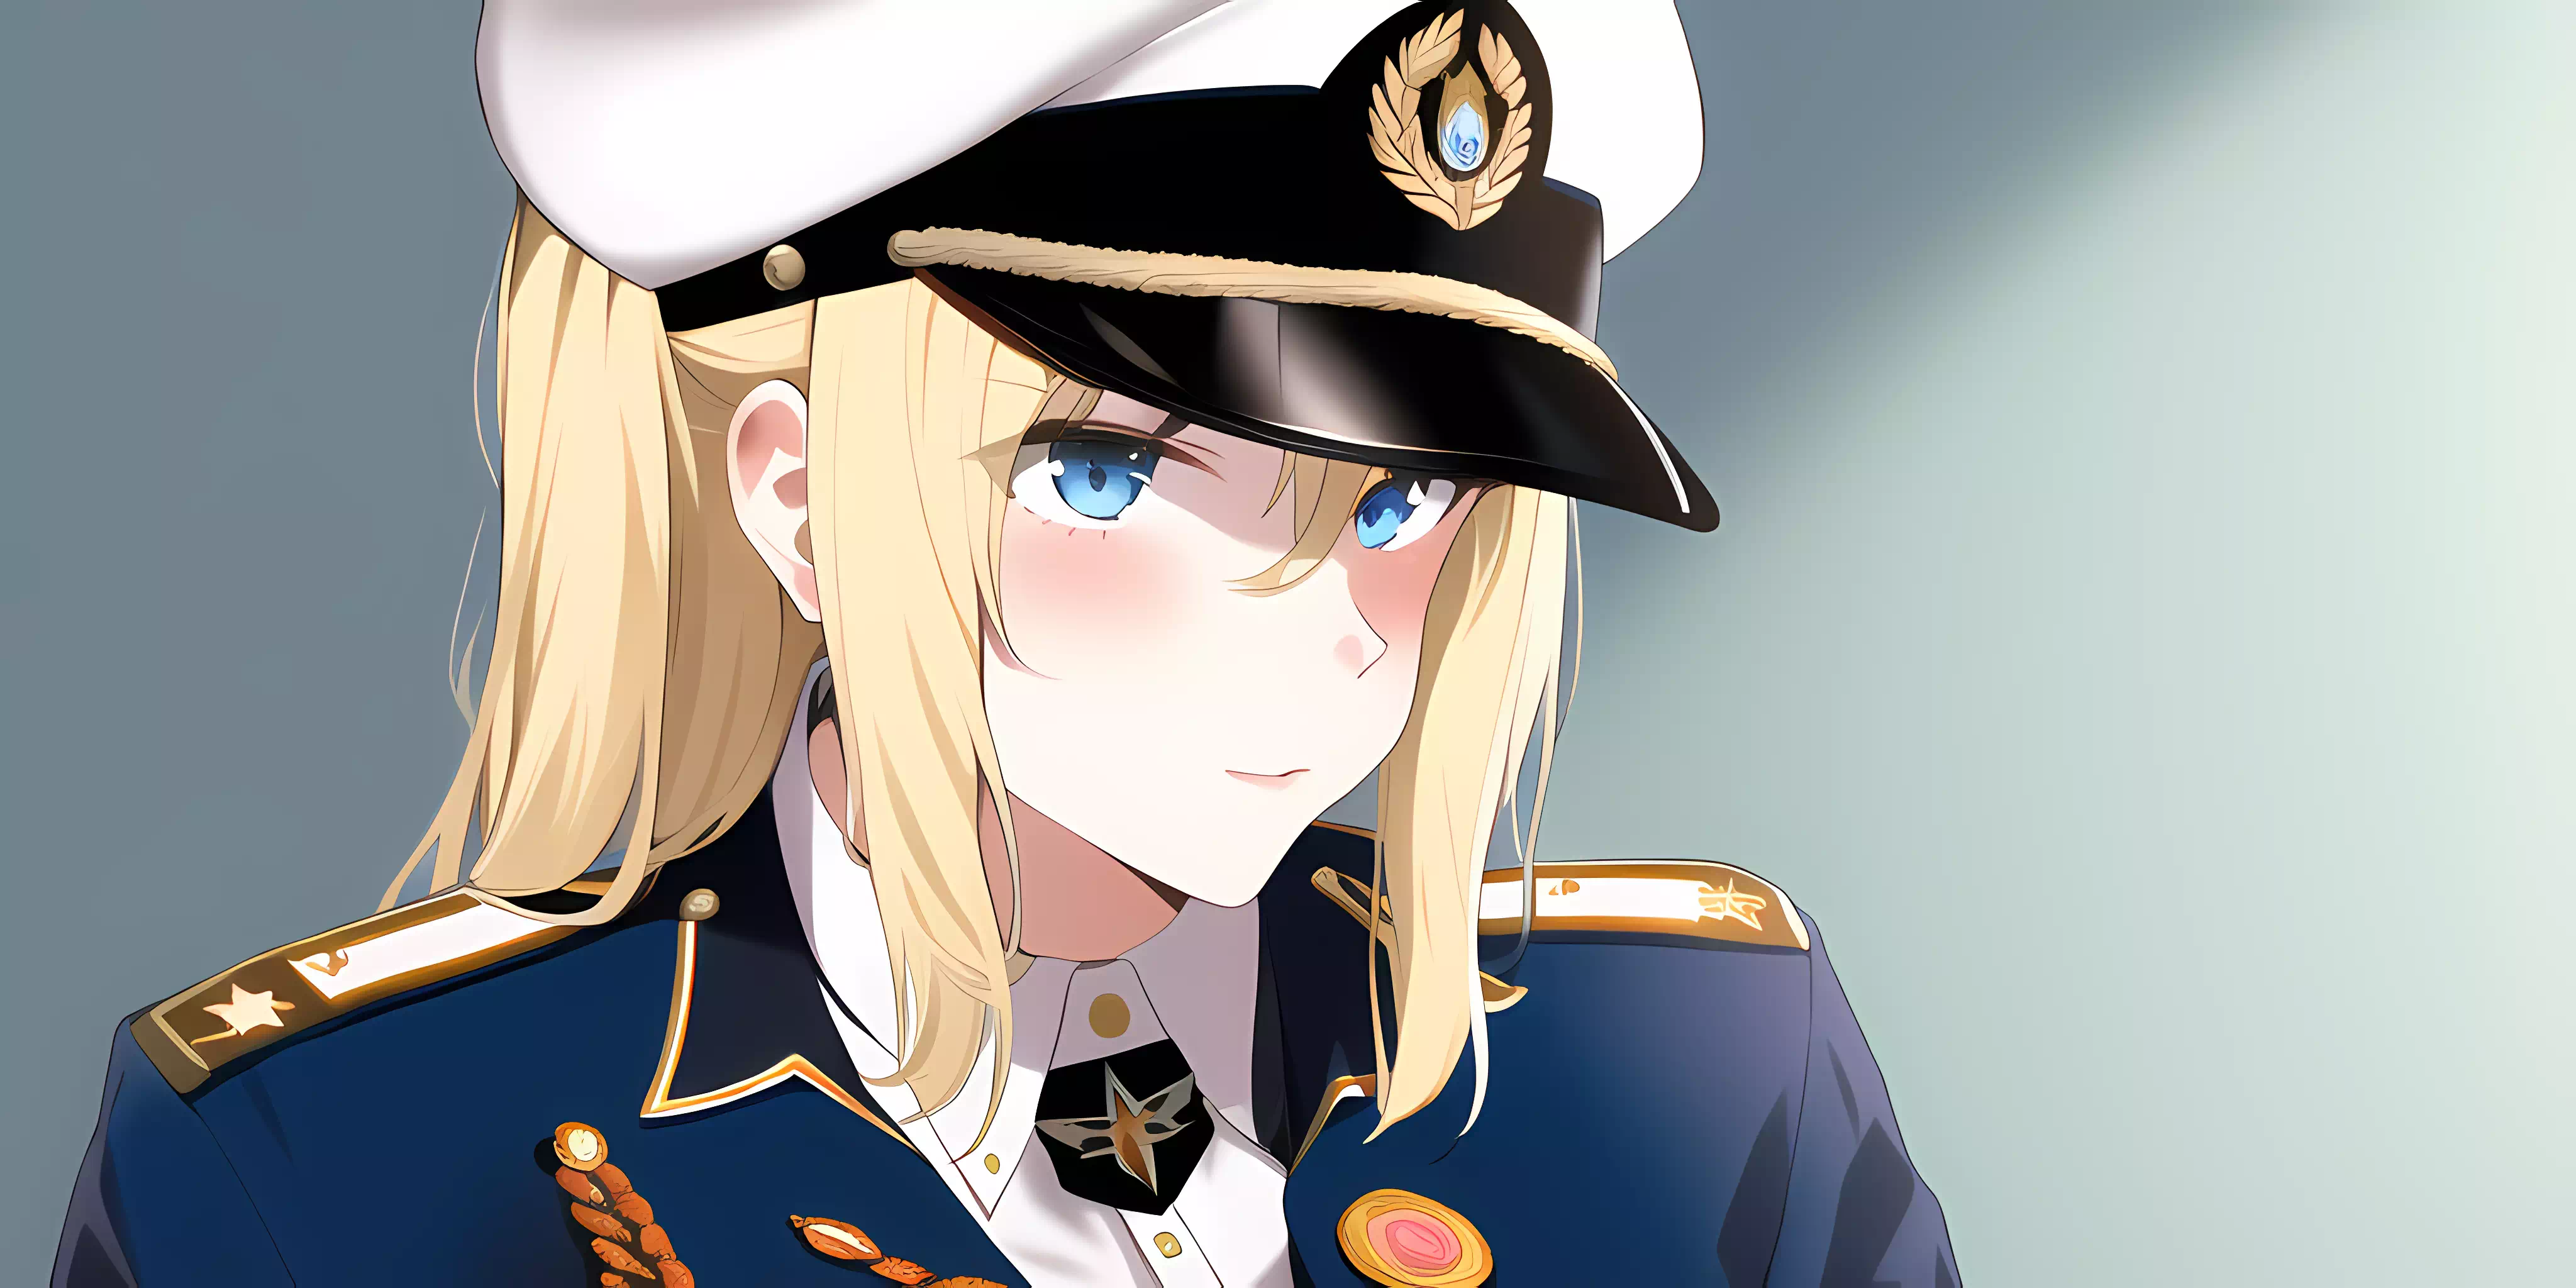 Anime Girl Naval Admiral Officer